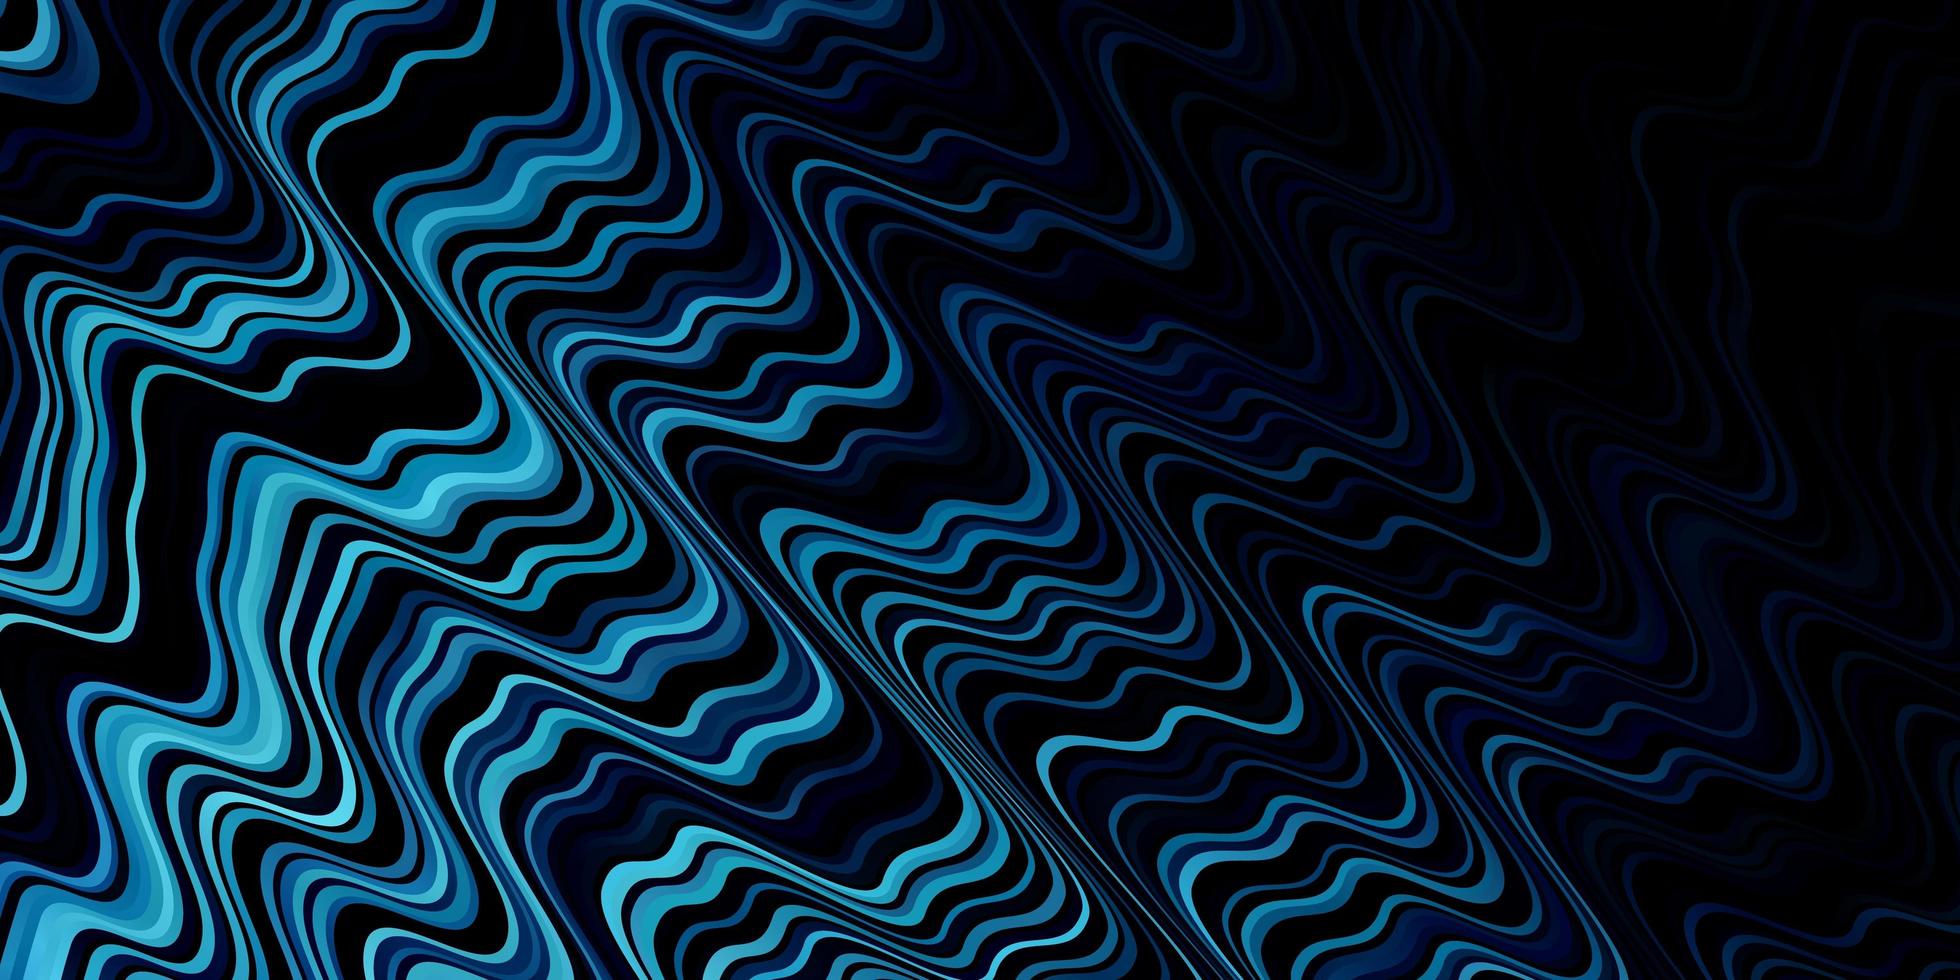 Telón de fondo de vector azul oscuro con curvas.